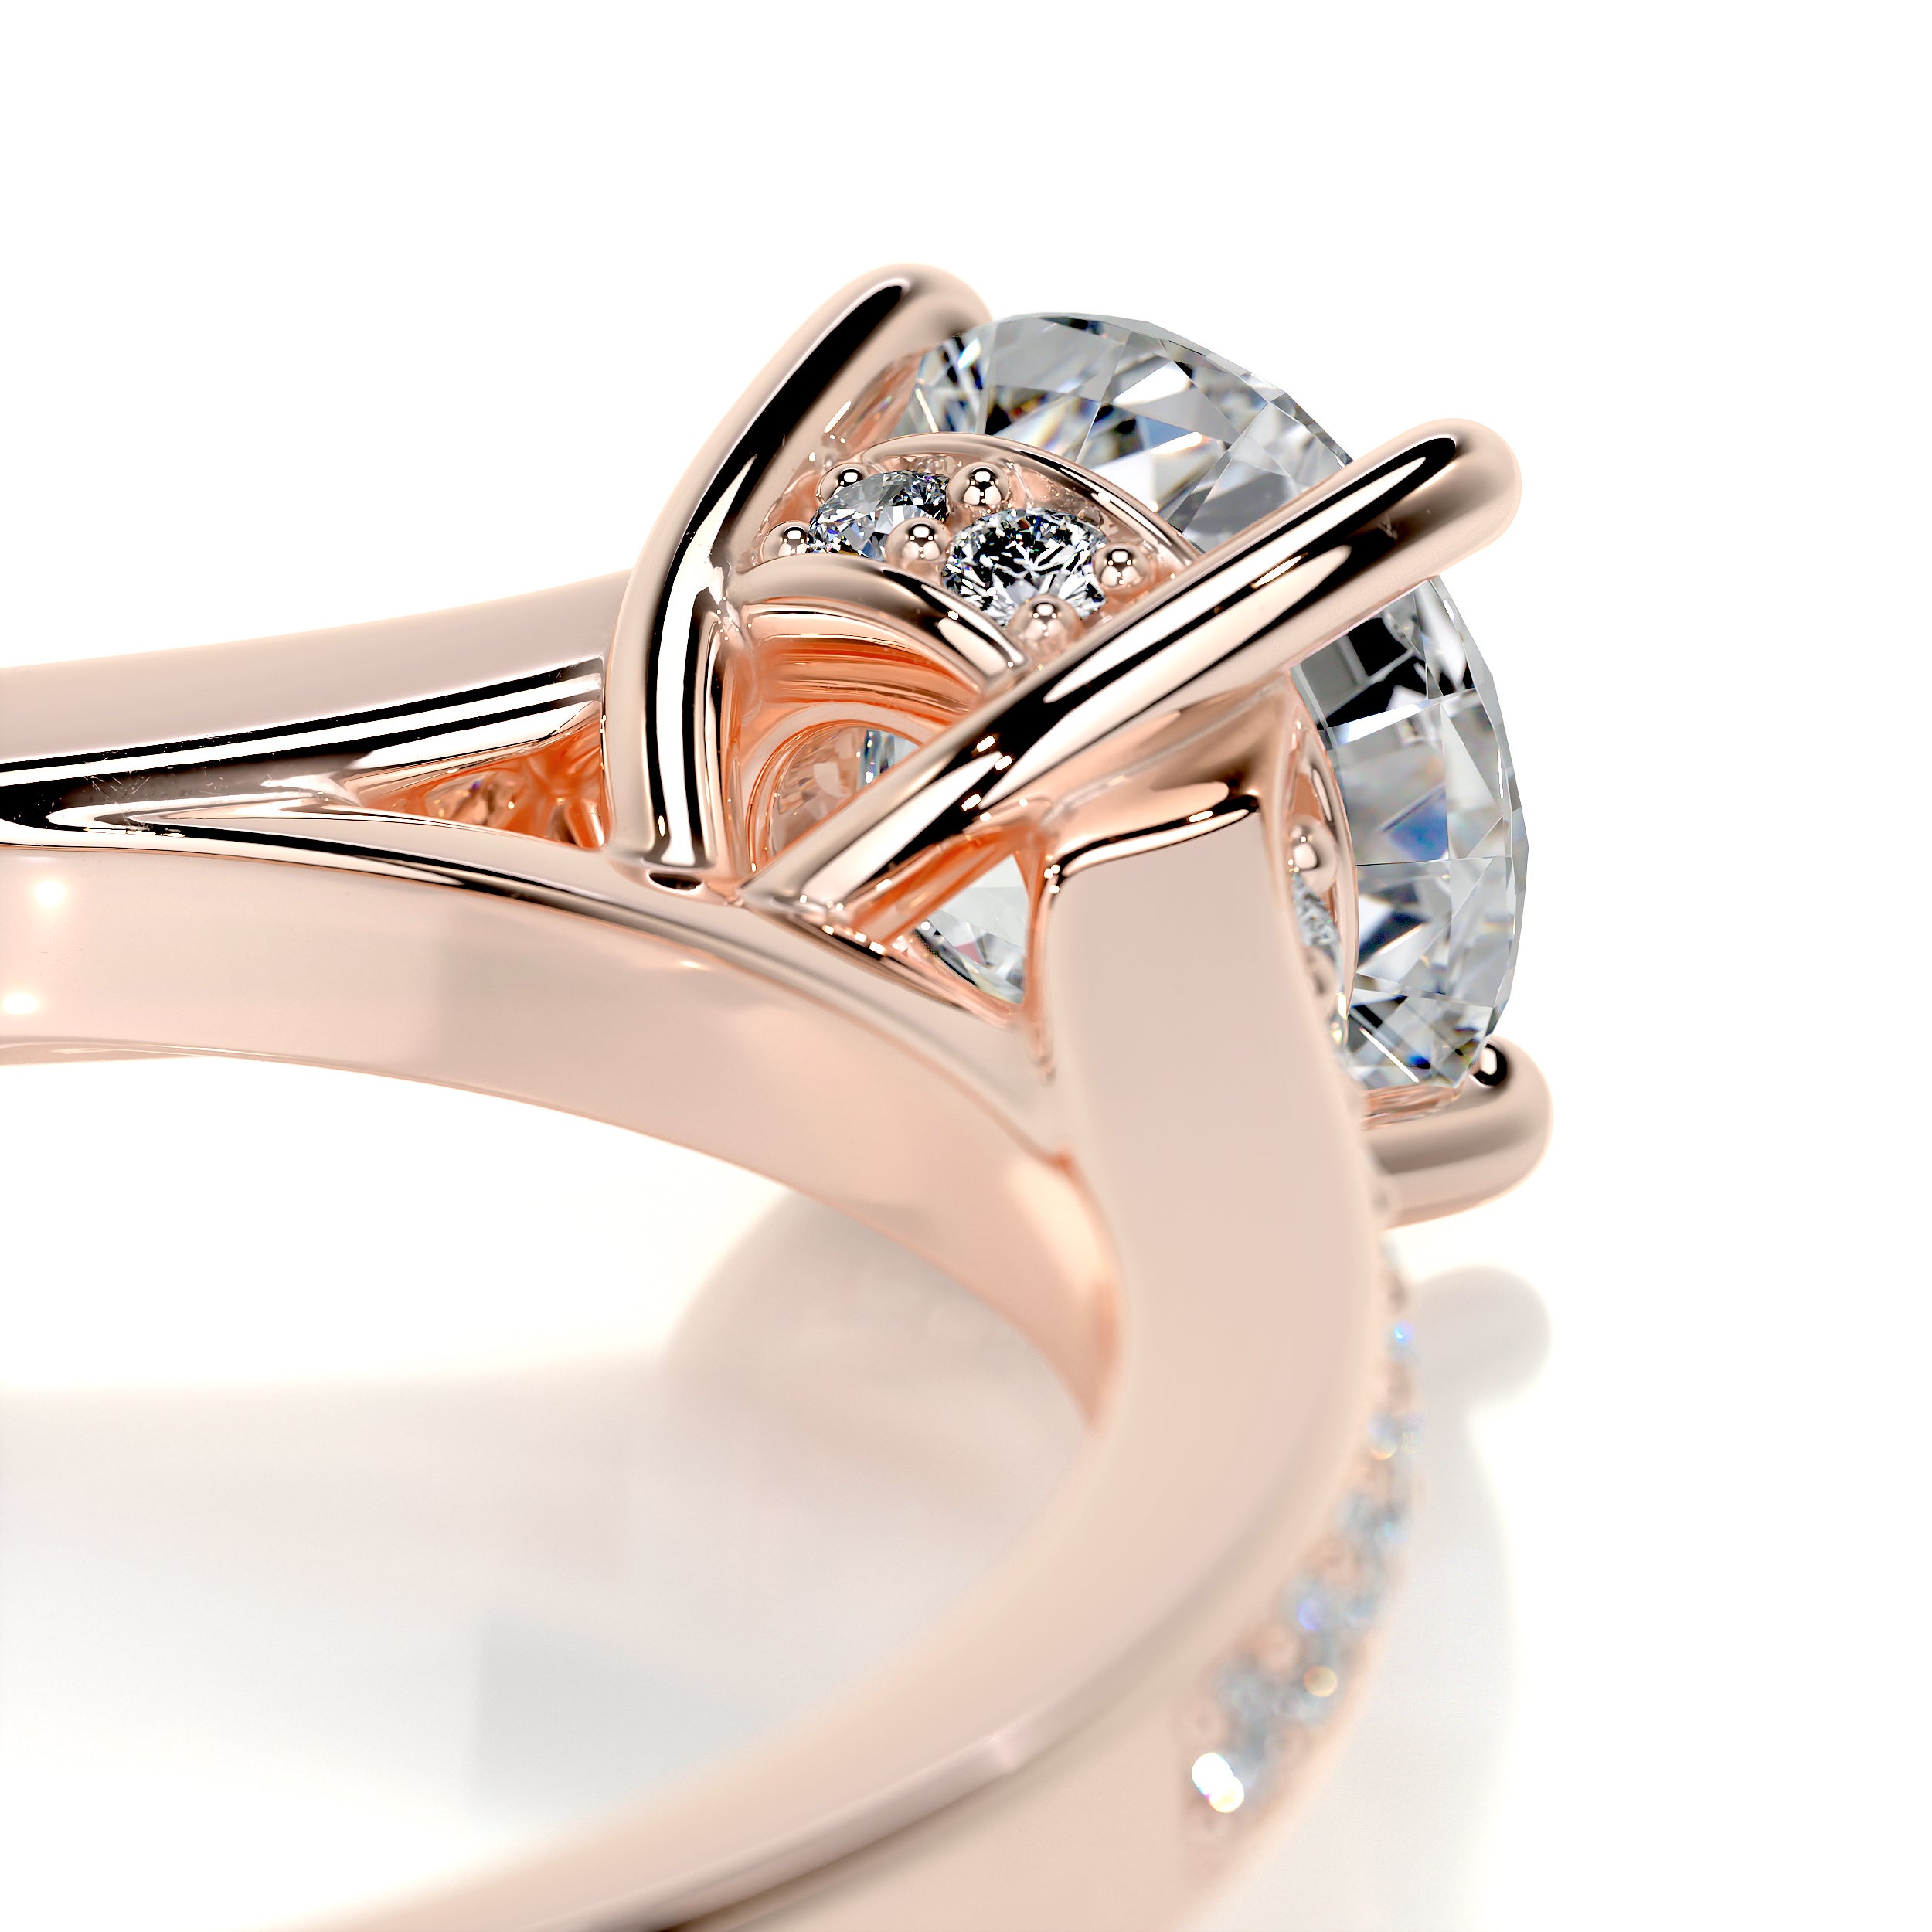 Lily Diamond Engagement Ring   (1.00 Carat) -14K Rose Gold